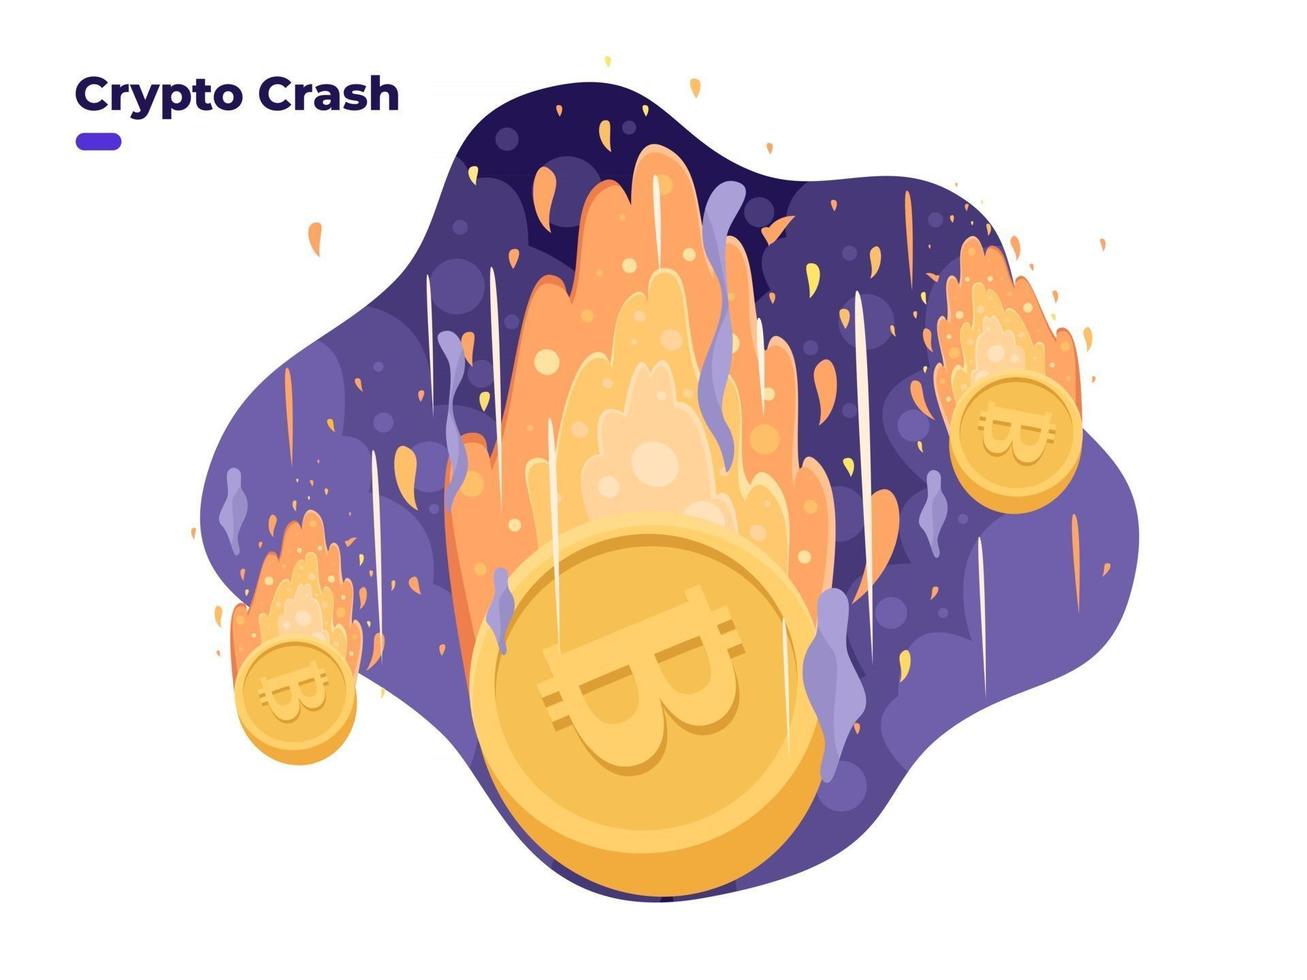 bitcoin prijs vallen illustratie. crash van de cryptocurrency-prijs. hoog risico van crypto-investeringen. cryptomunt branden. crypto beurs investeringscrisis, bearmarkt. vector